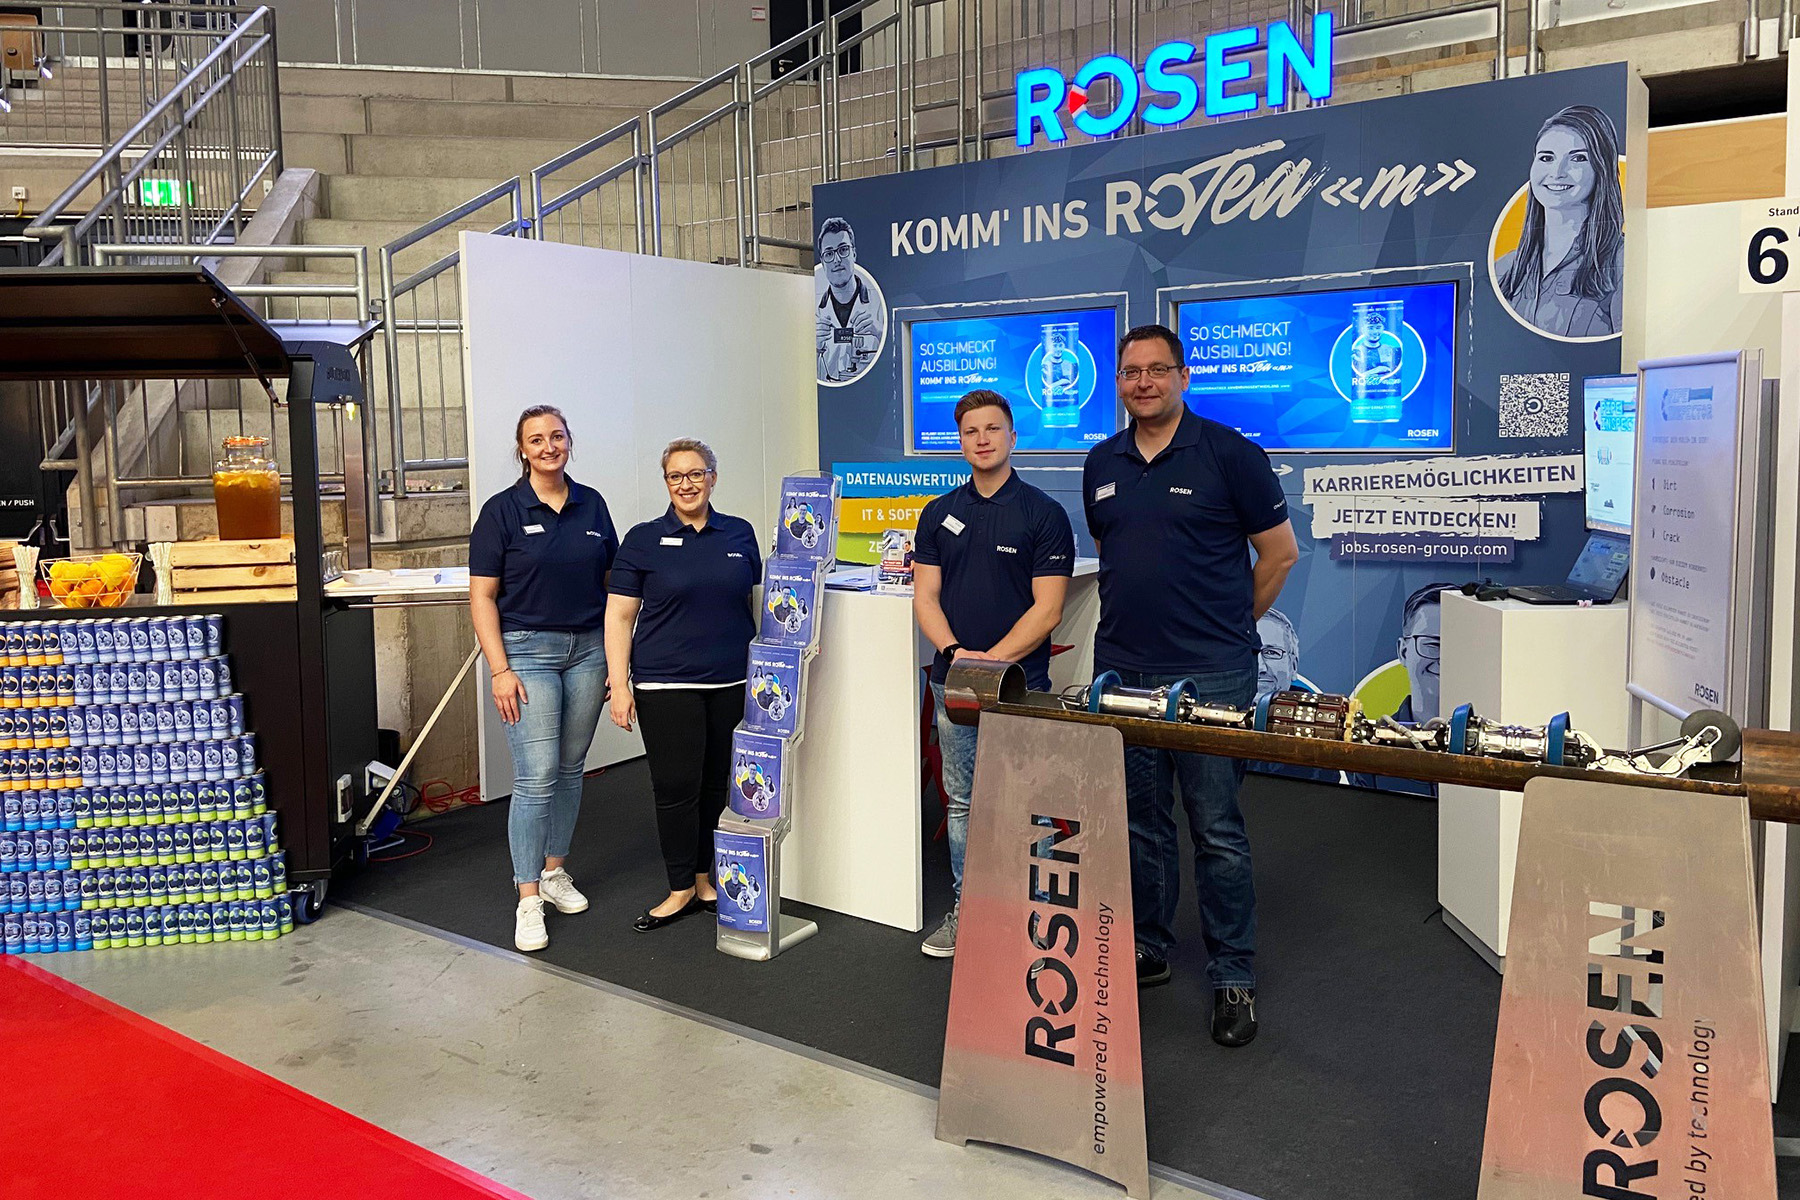 At the Emsland Job Fair in Lingen (Ems), ROSEN offered something refreshing for one`s career!